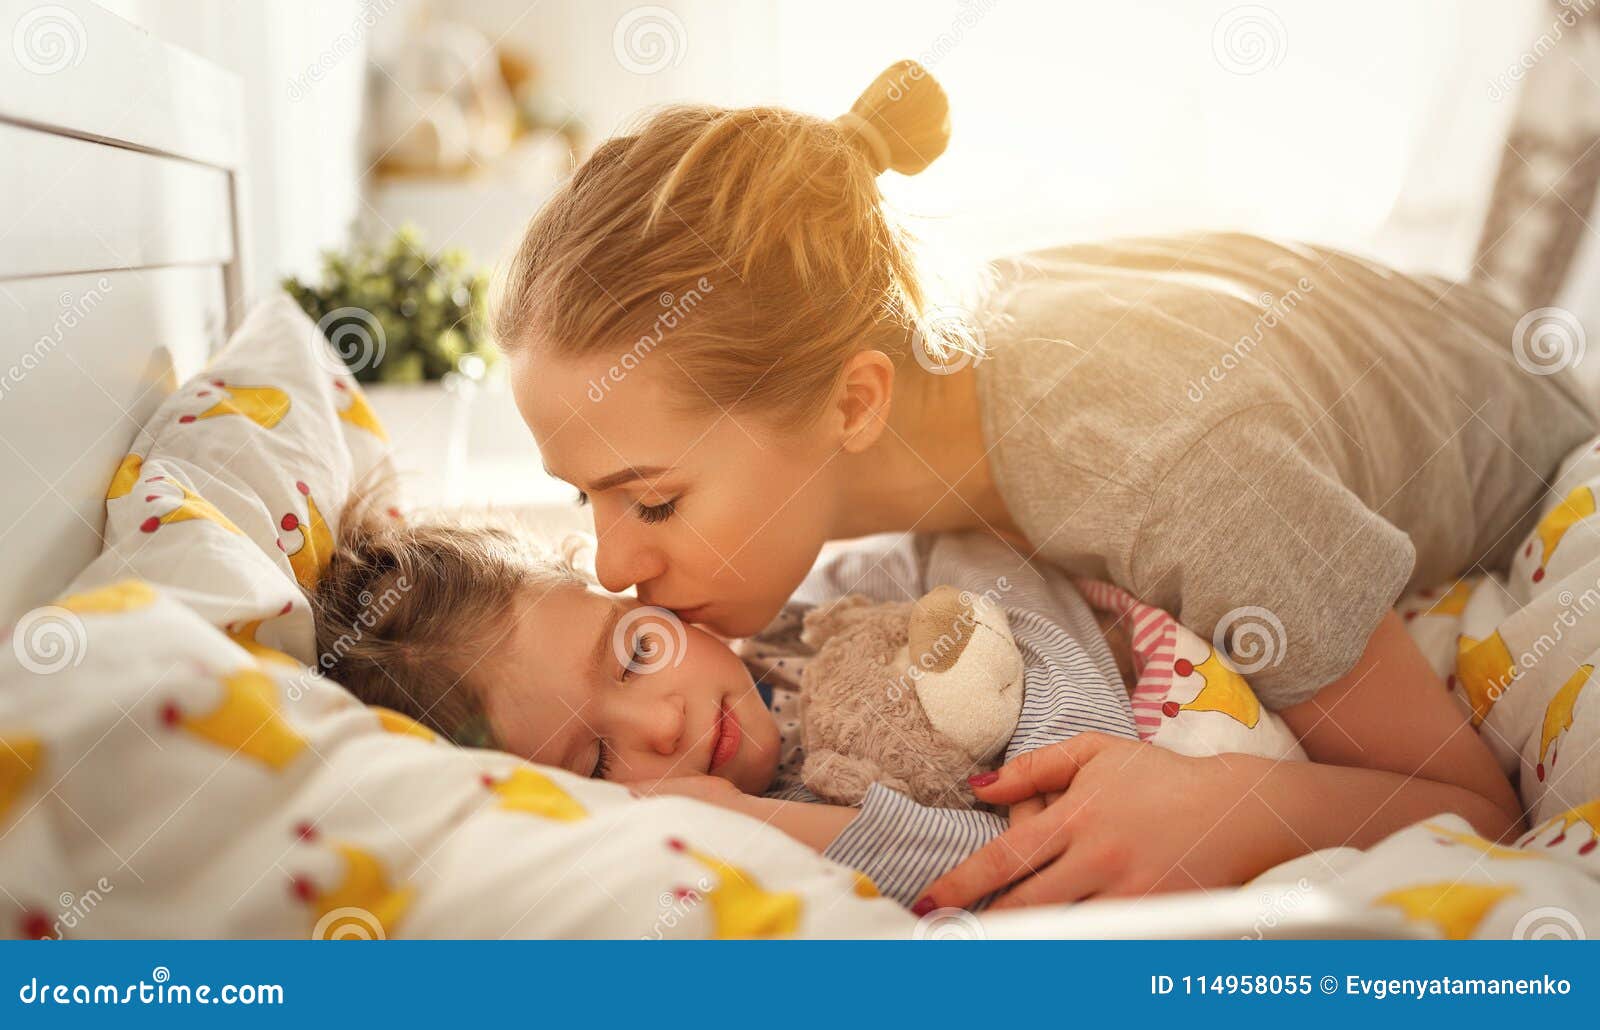 Снится мама целует. Разбудить ребенка утром. Пробуждение младенца. Мама с ребенком перед сном. Мама будит утром ребенка.